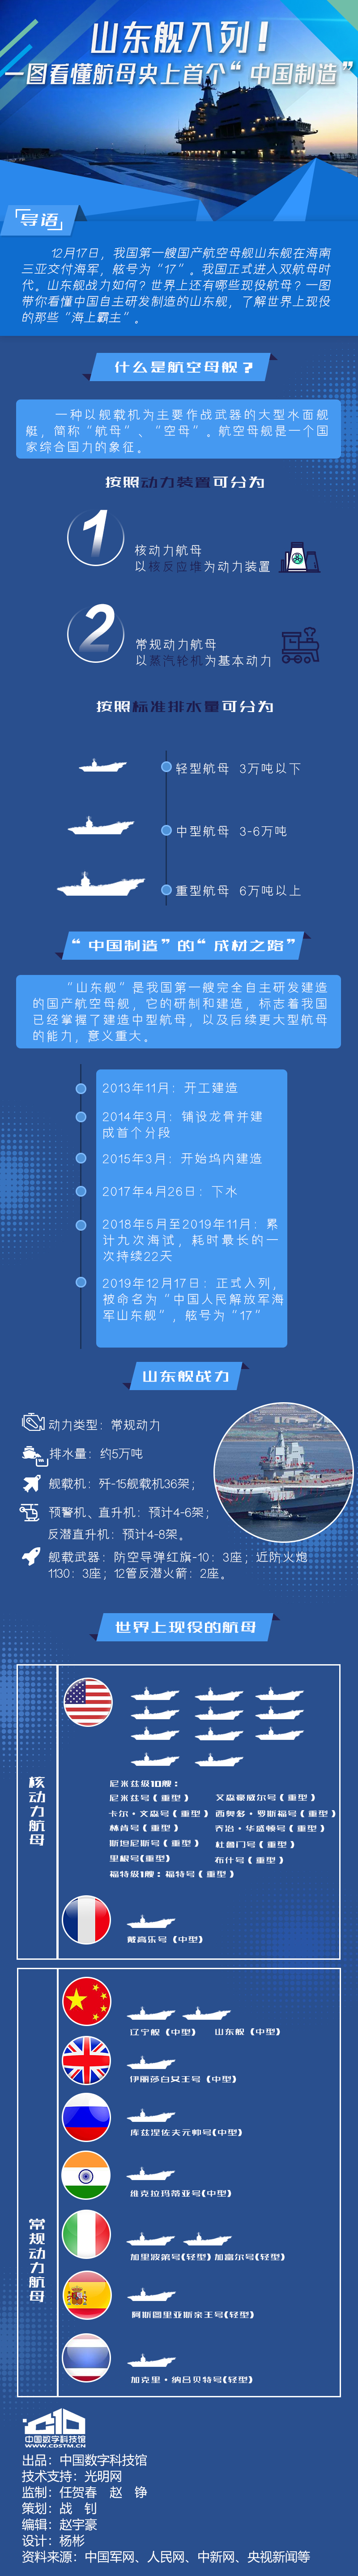 山东舰入列！一图看懂航母史上首个“中国制造”